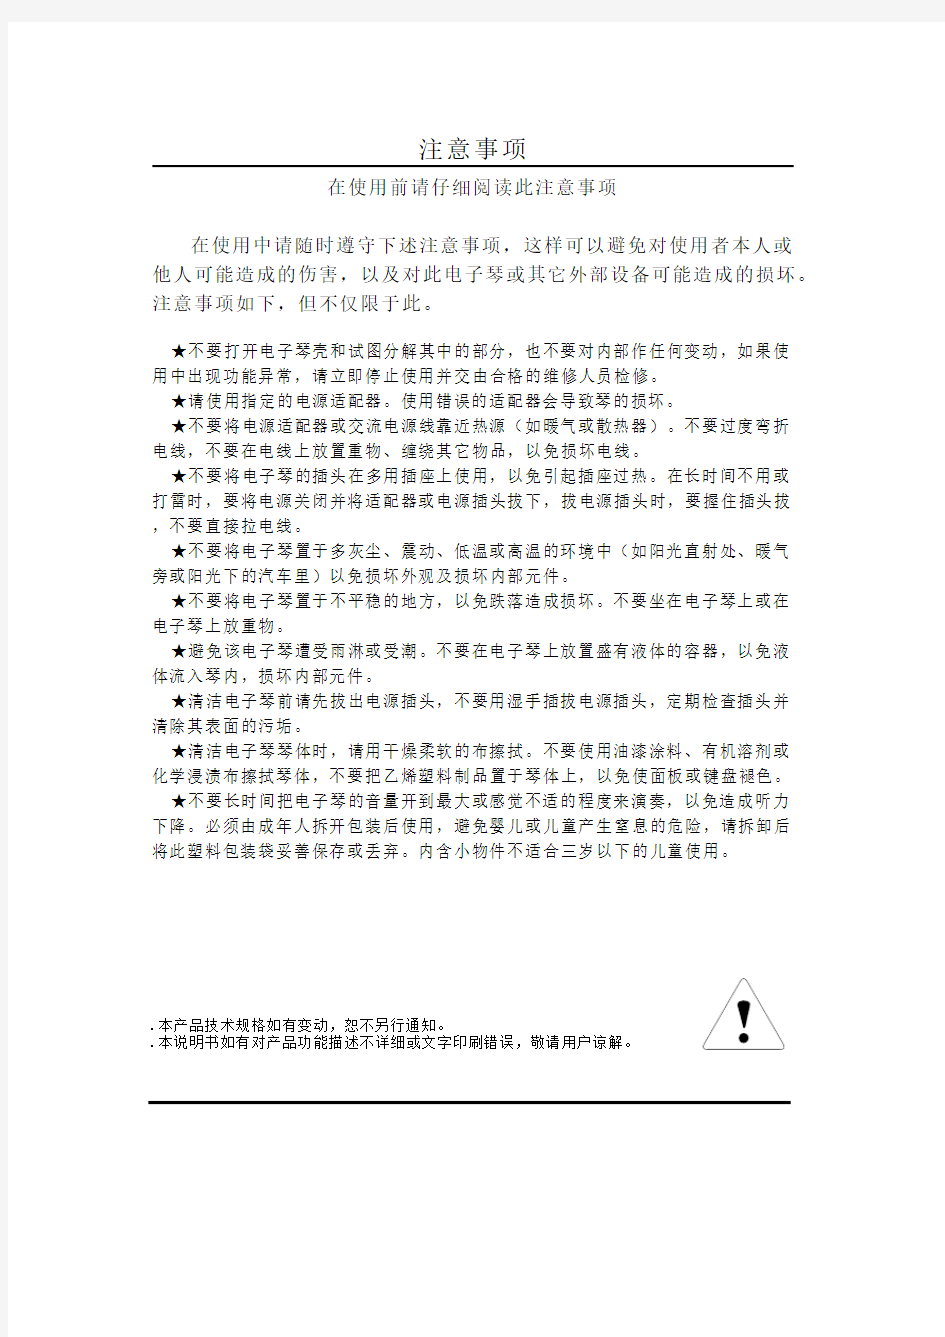 爱尔科电子琴ARK-2177中文说明书